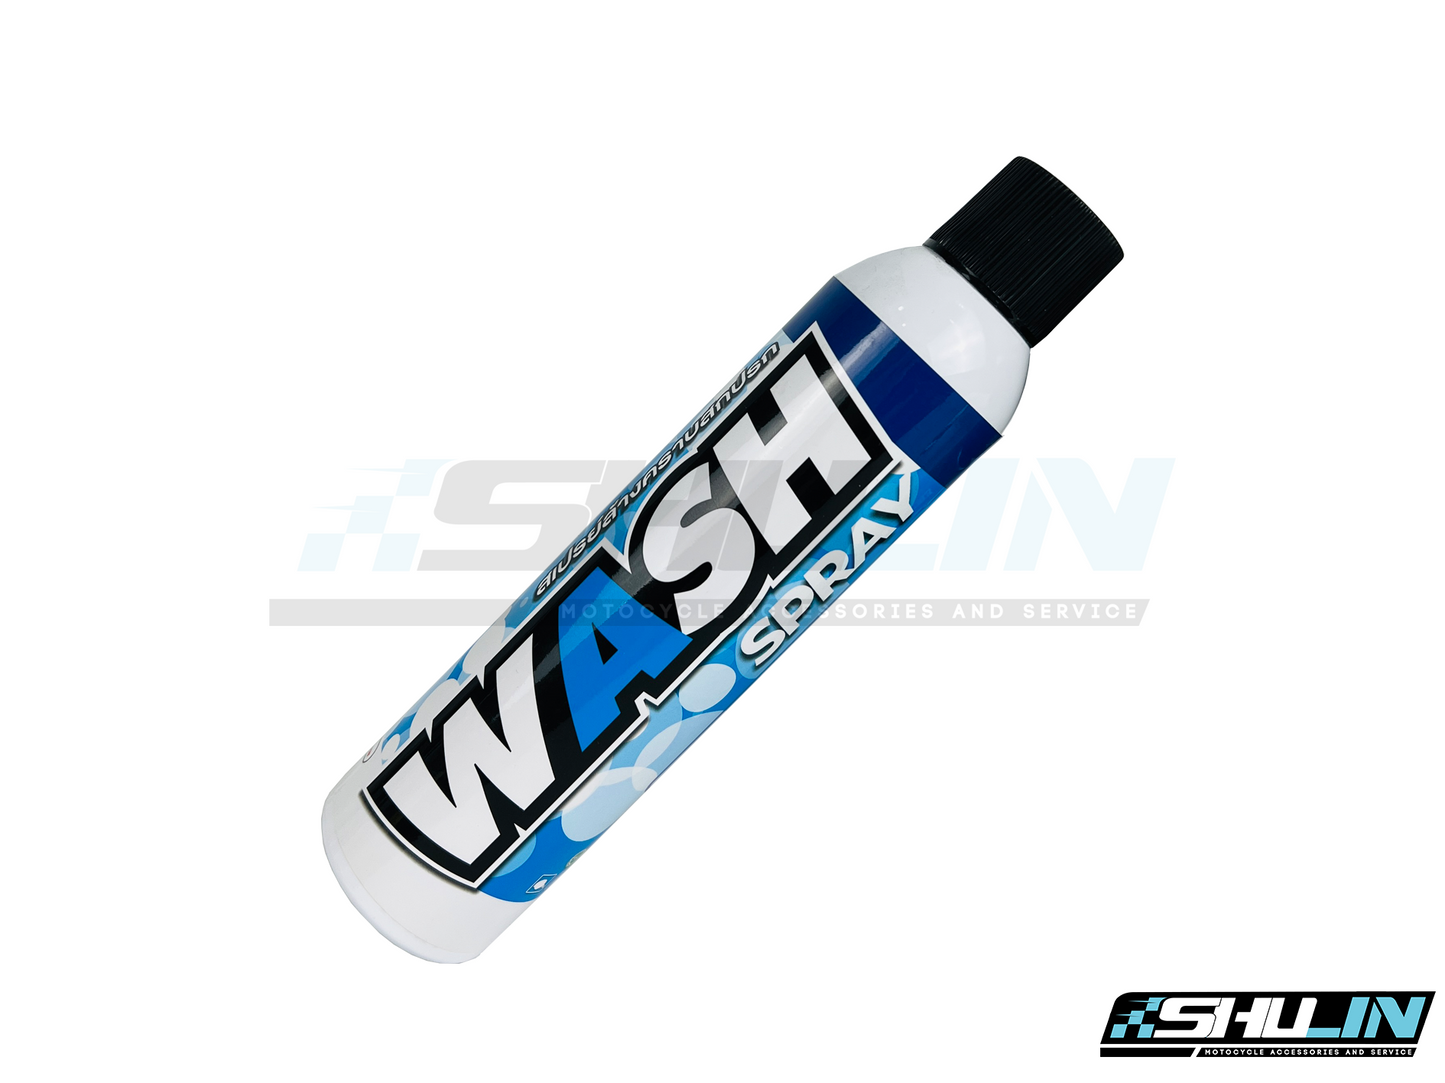 สเปรย์ล้างรถแบบไม่ต้องใช้น้ำ (LUBE71) WASH SPRAY 320 ml.